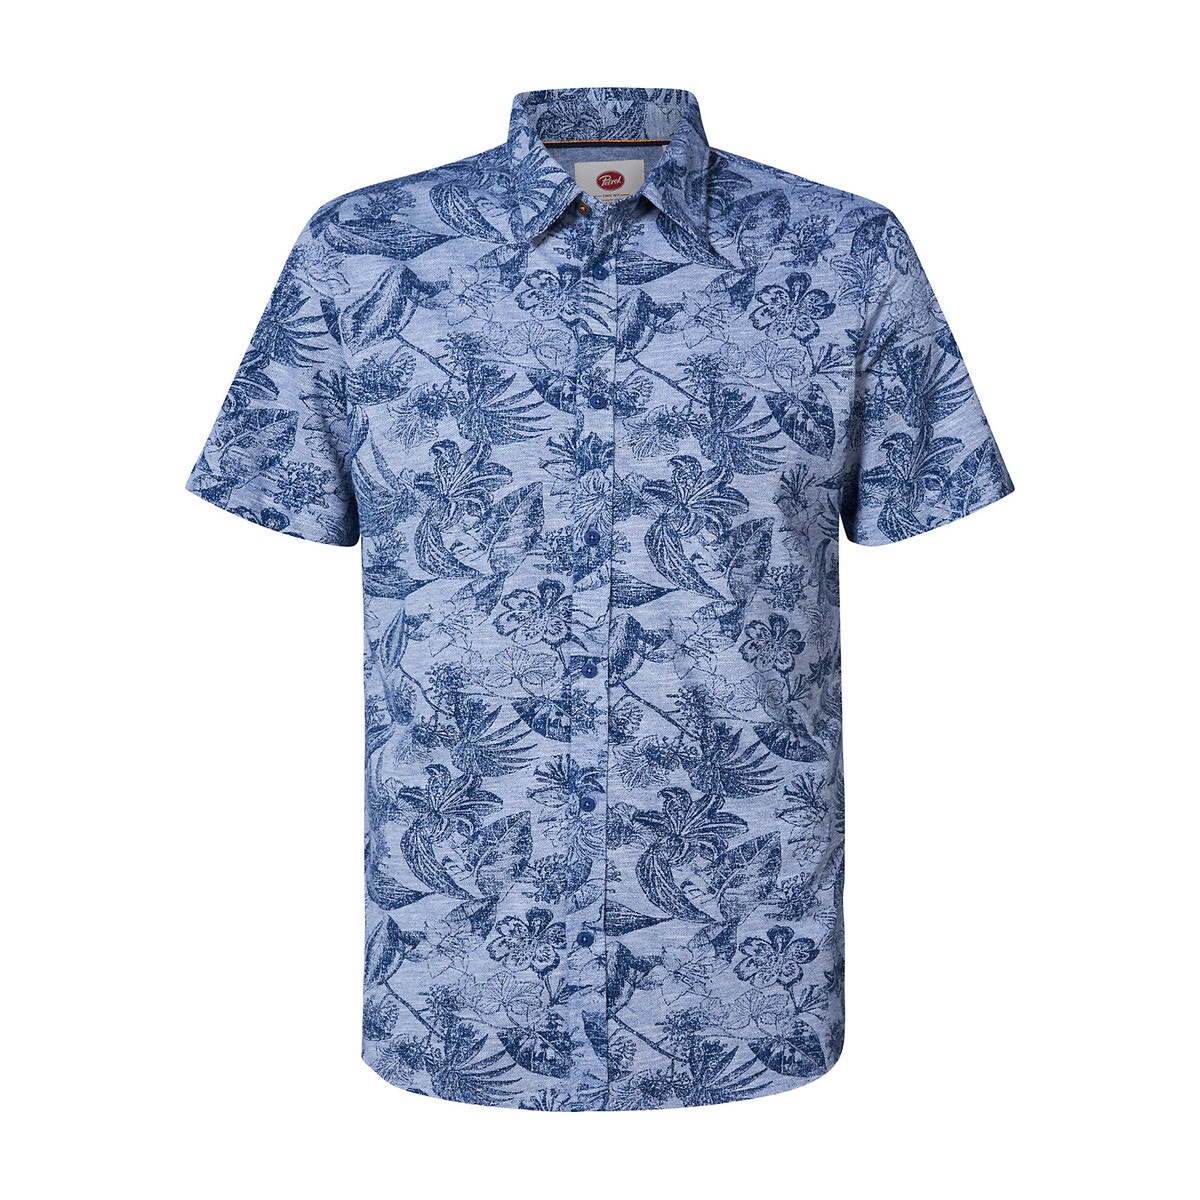 Κοντομάνικο πουκάμισο με φλοράλ μοτίβο